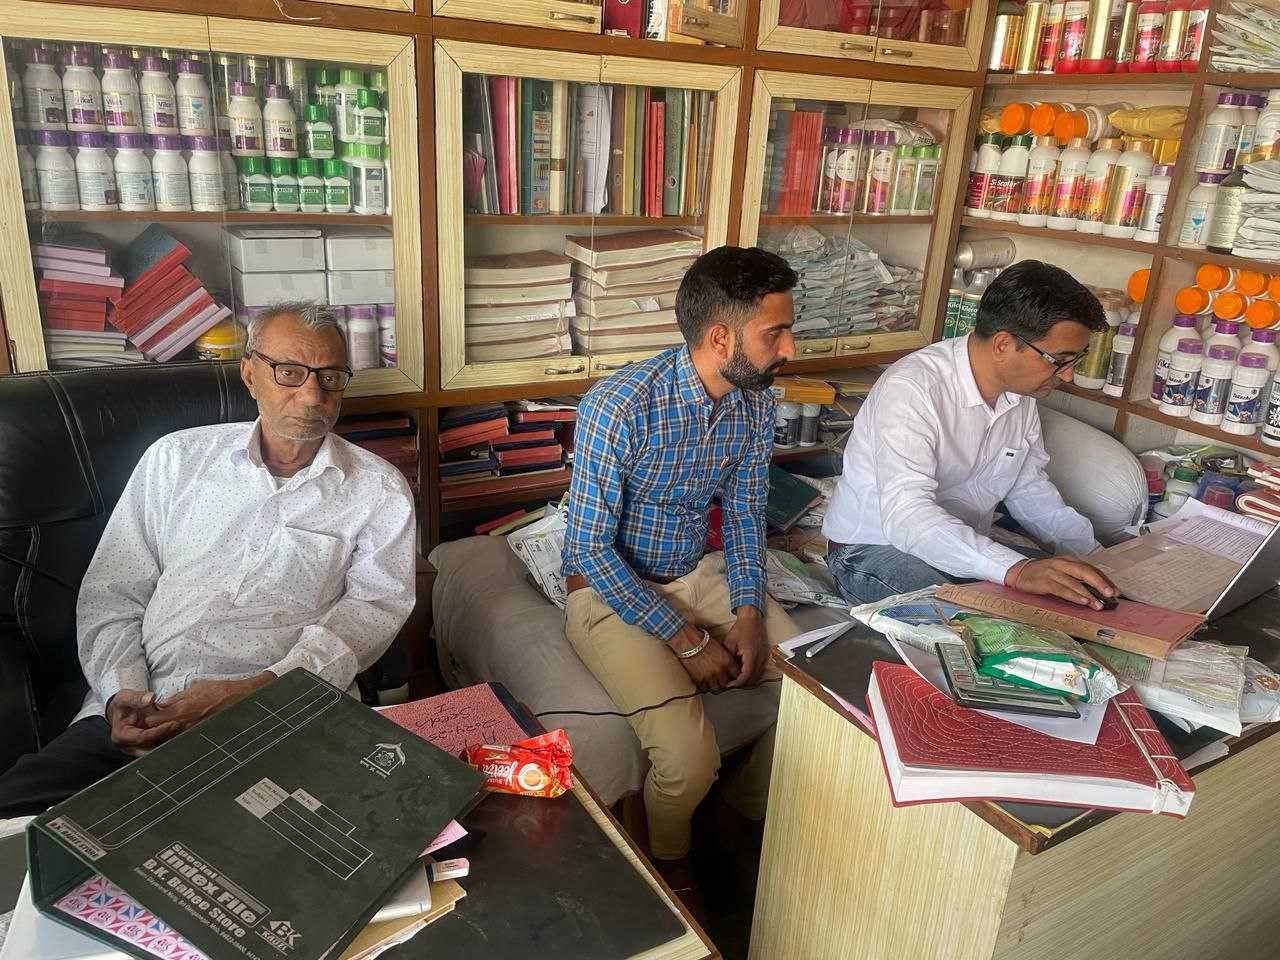 श्रीगंगानगर खंड: बीटी कॉटन के 207 नमूने लिए,25 बीज विक्रेताओं के लाइसेंस निलंबित